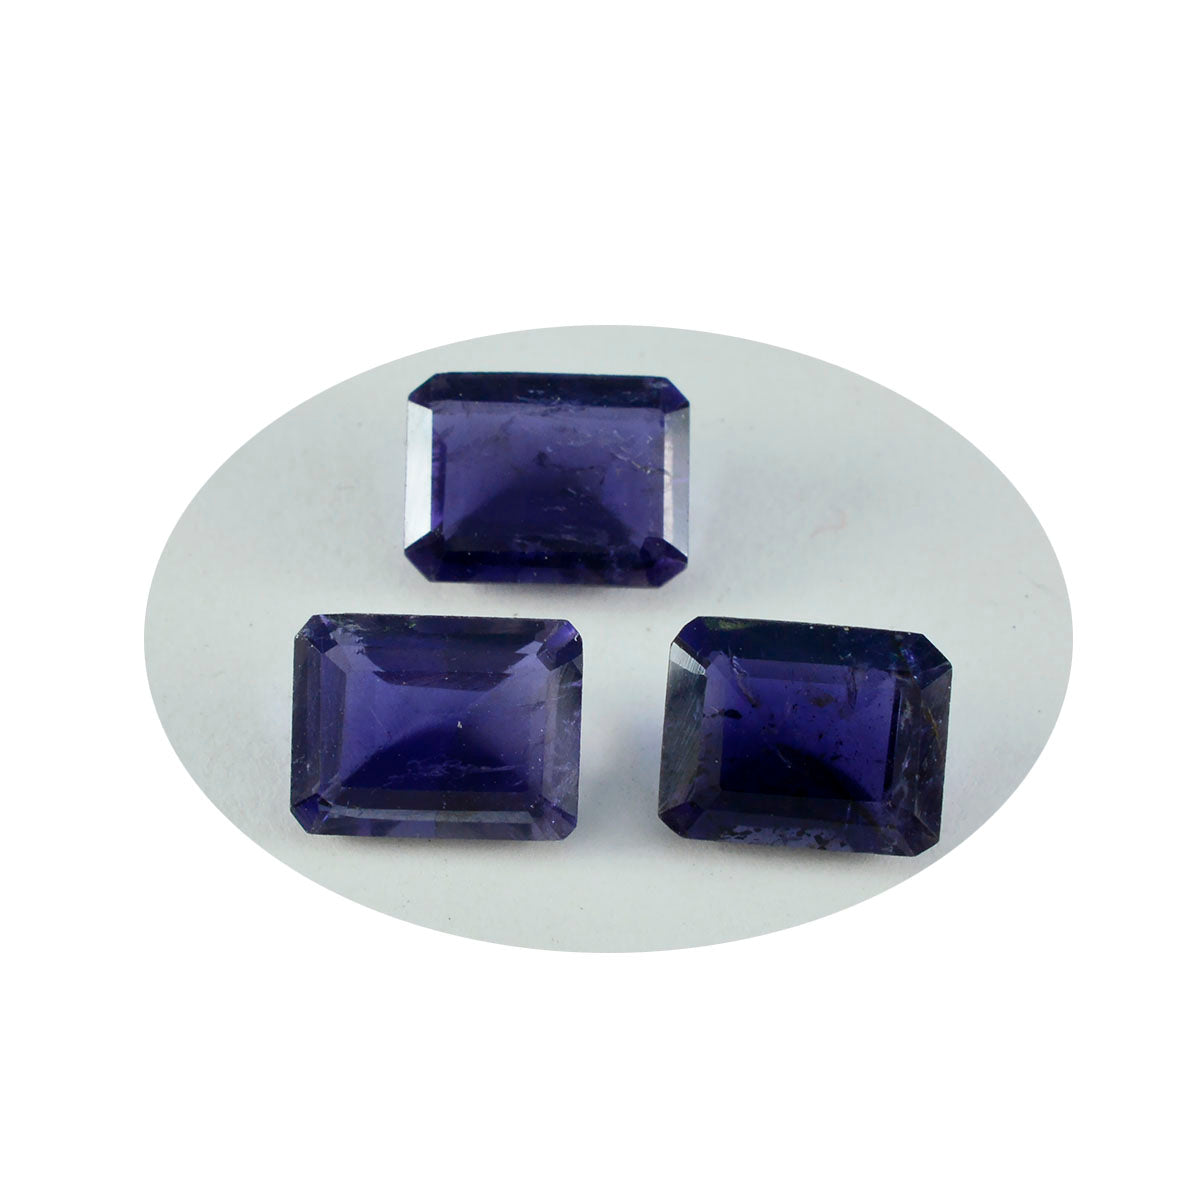 Riyogems 1PC blauwe ioliet gefacetteerde 9x11 mm achthoekige vorm AA-kwaliteit losse edelsteen